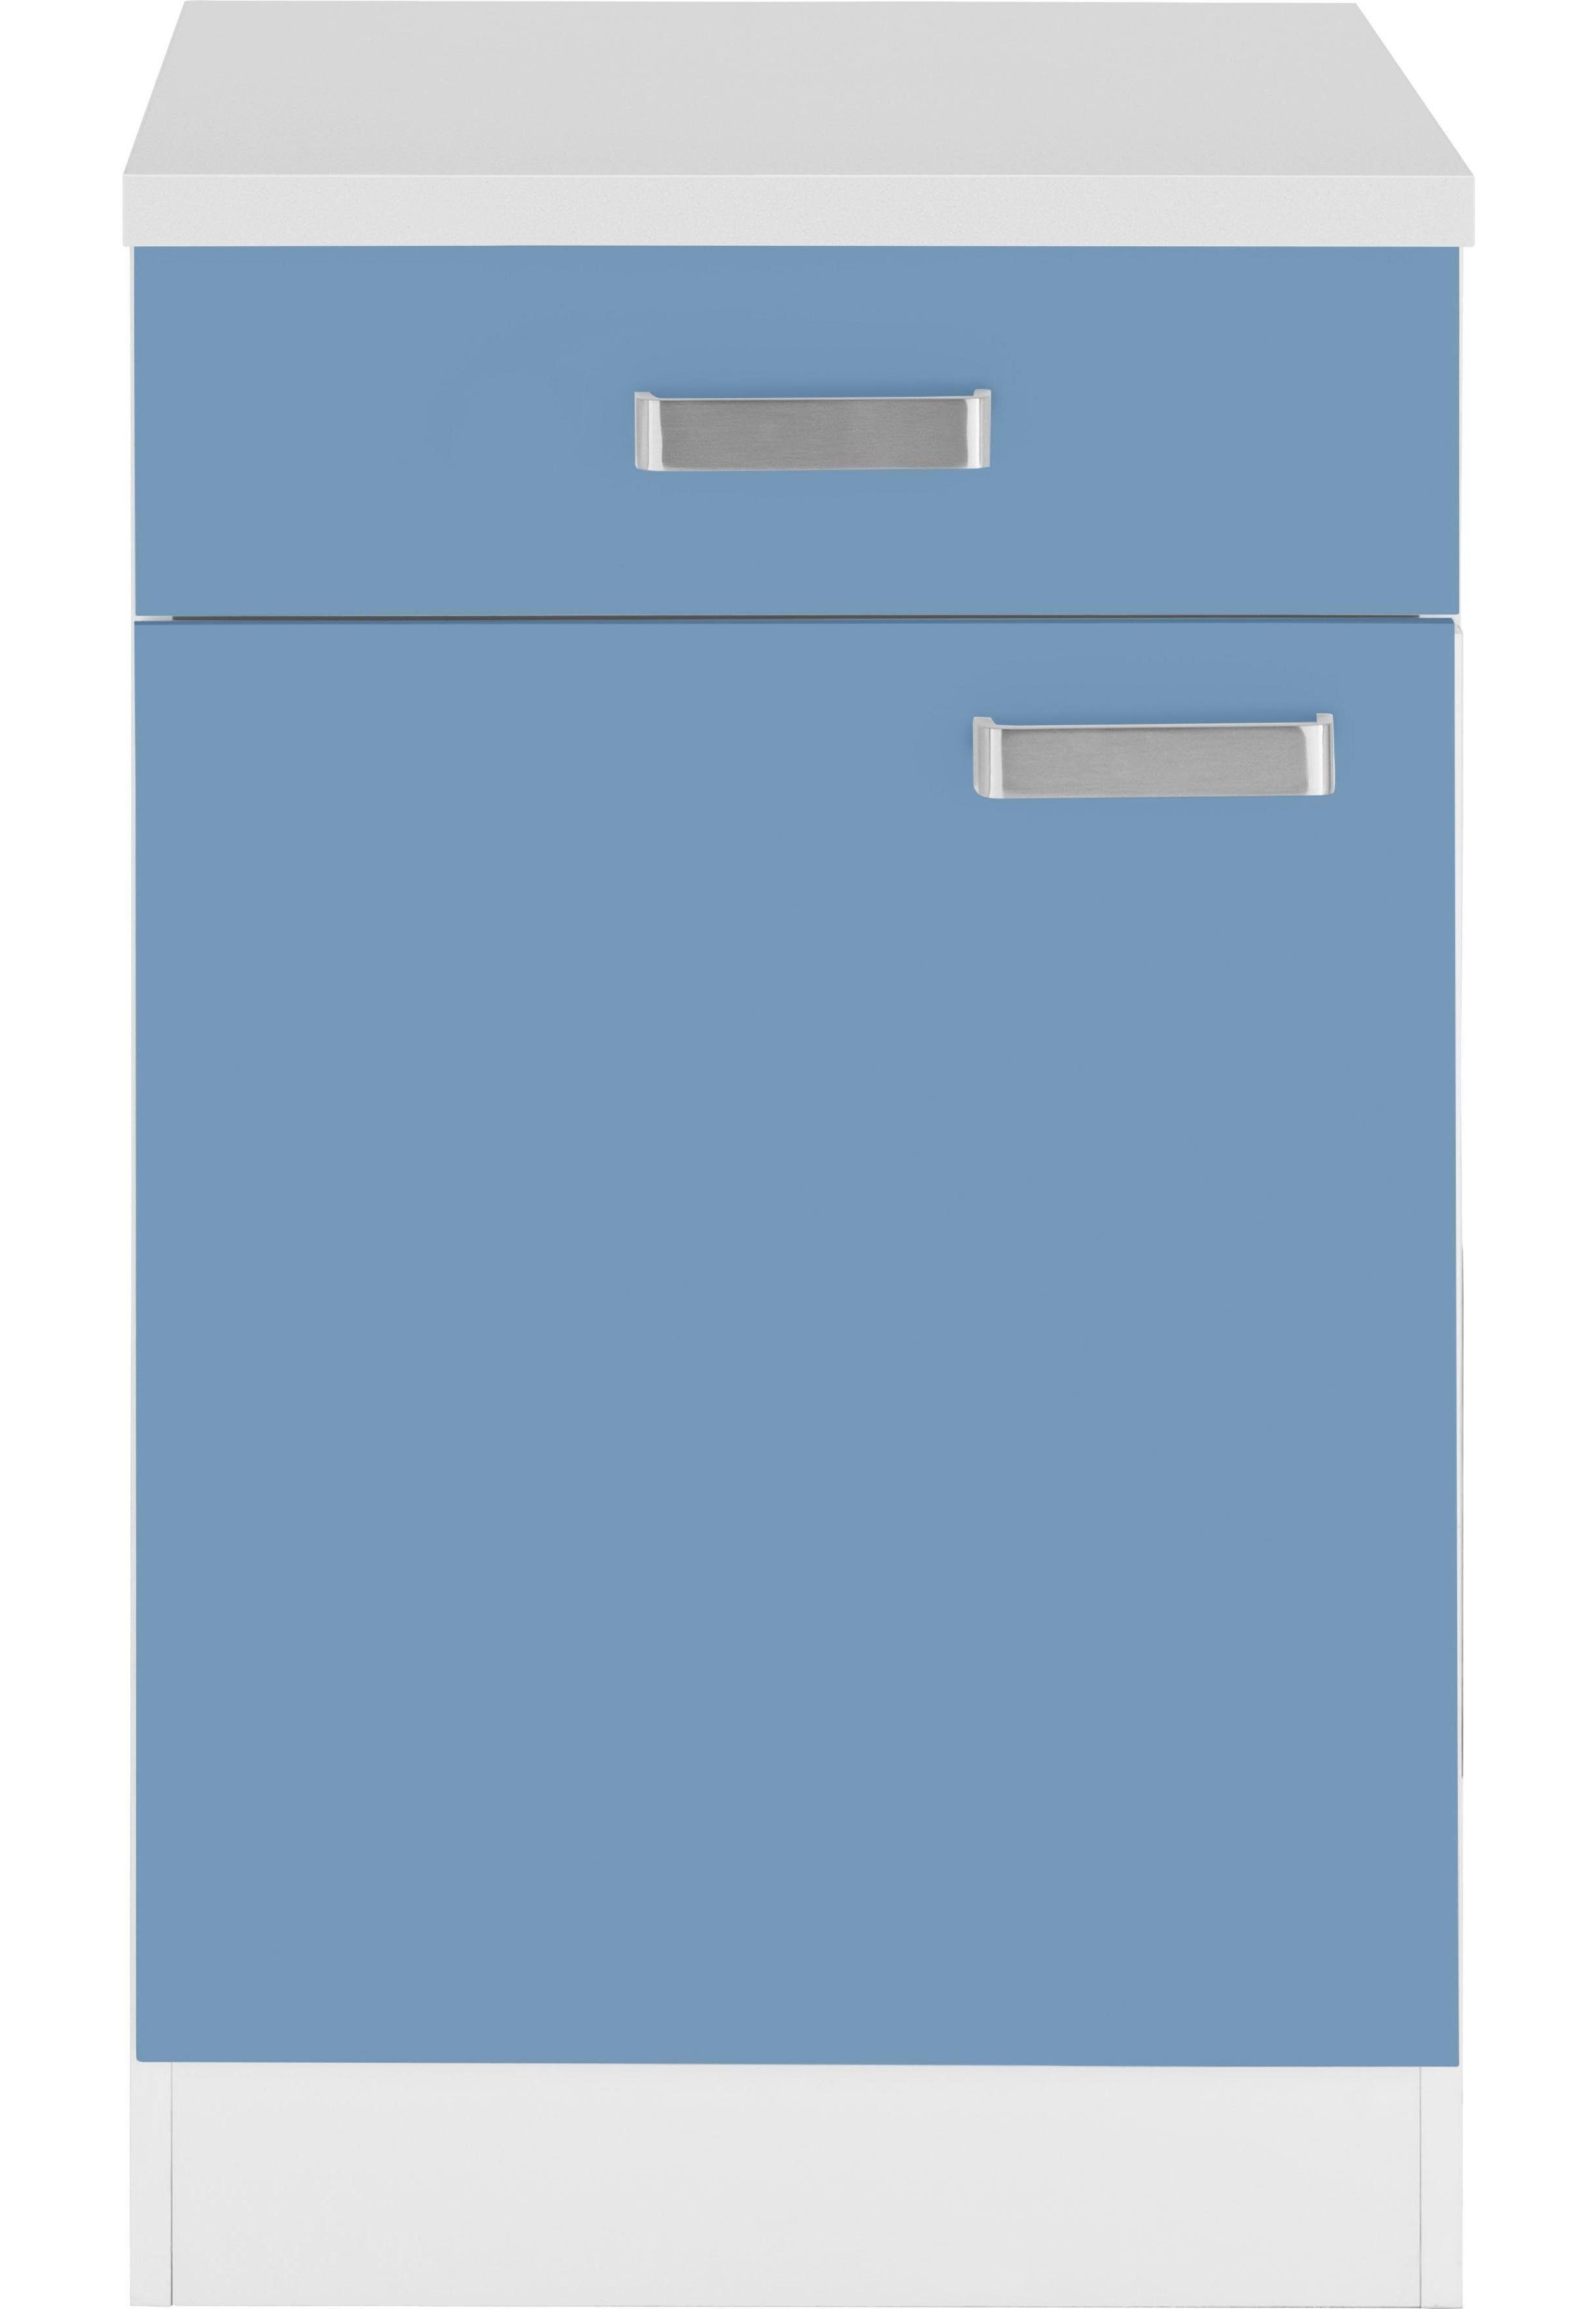 cm Küchen Unterschrank breit himmelblau/weiß Husum 50 wiho